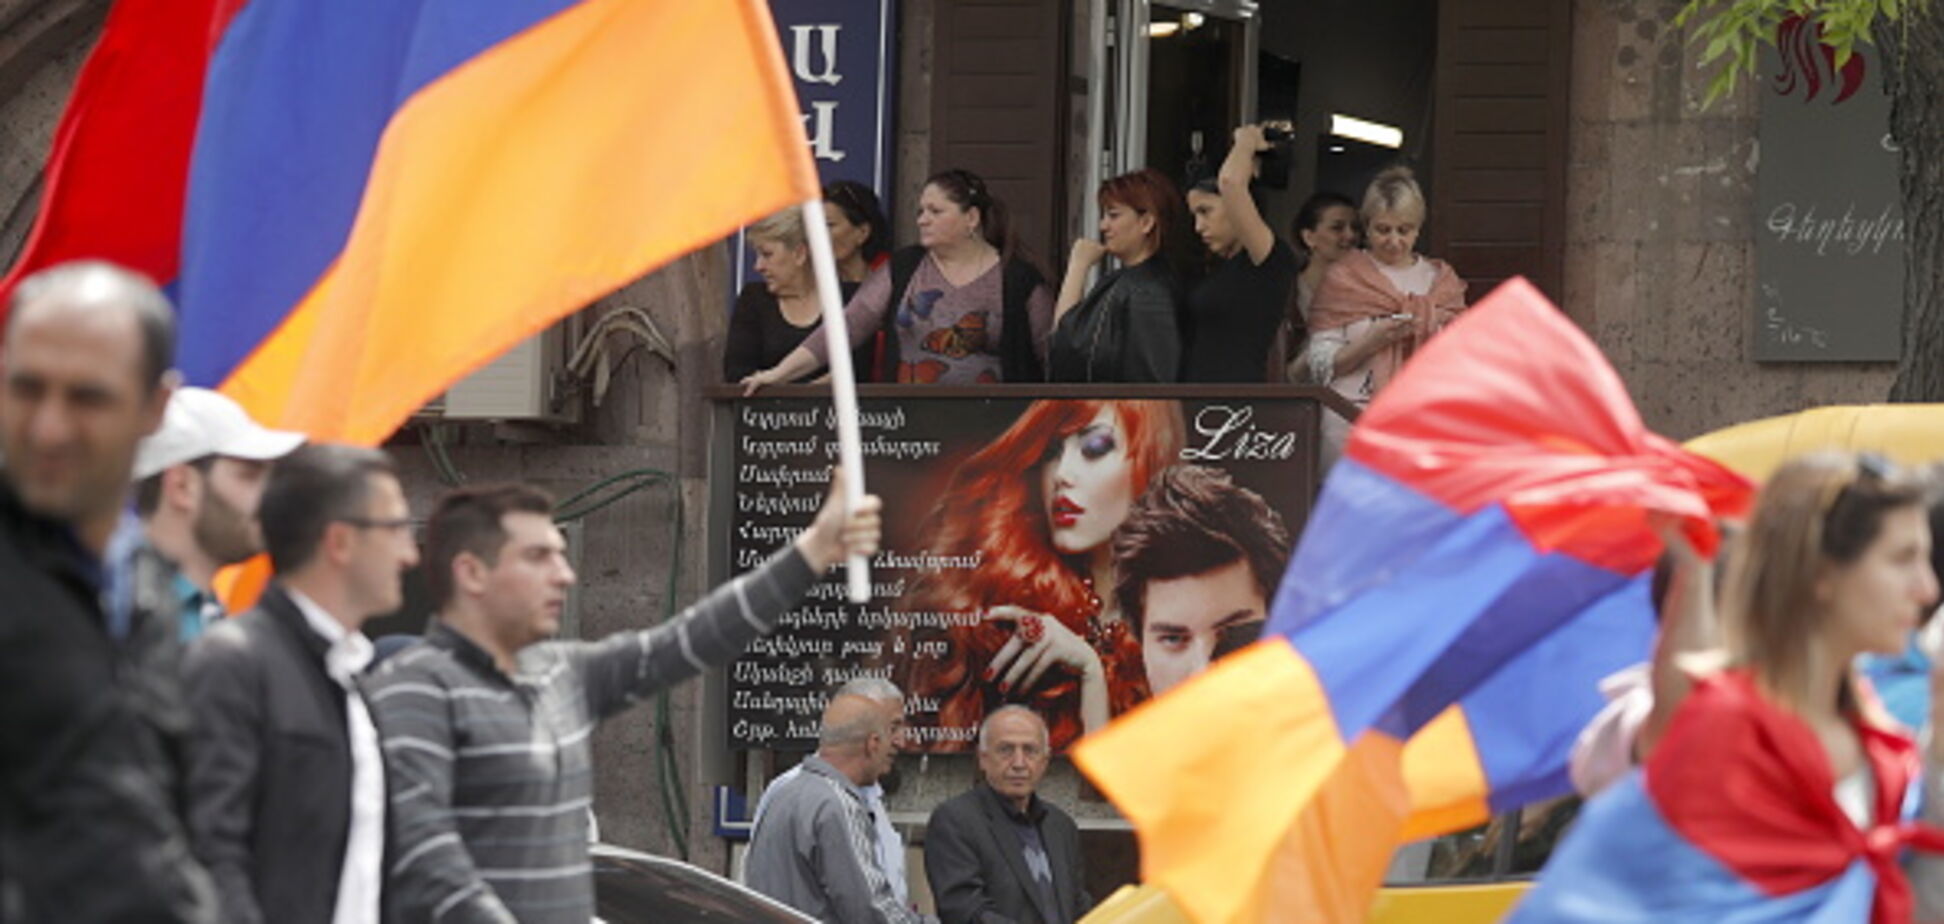 'Ви проти волі царя-Путіна?' У протестах Вірменії побачили показовий момент